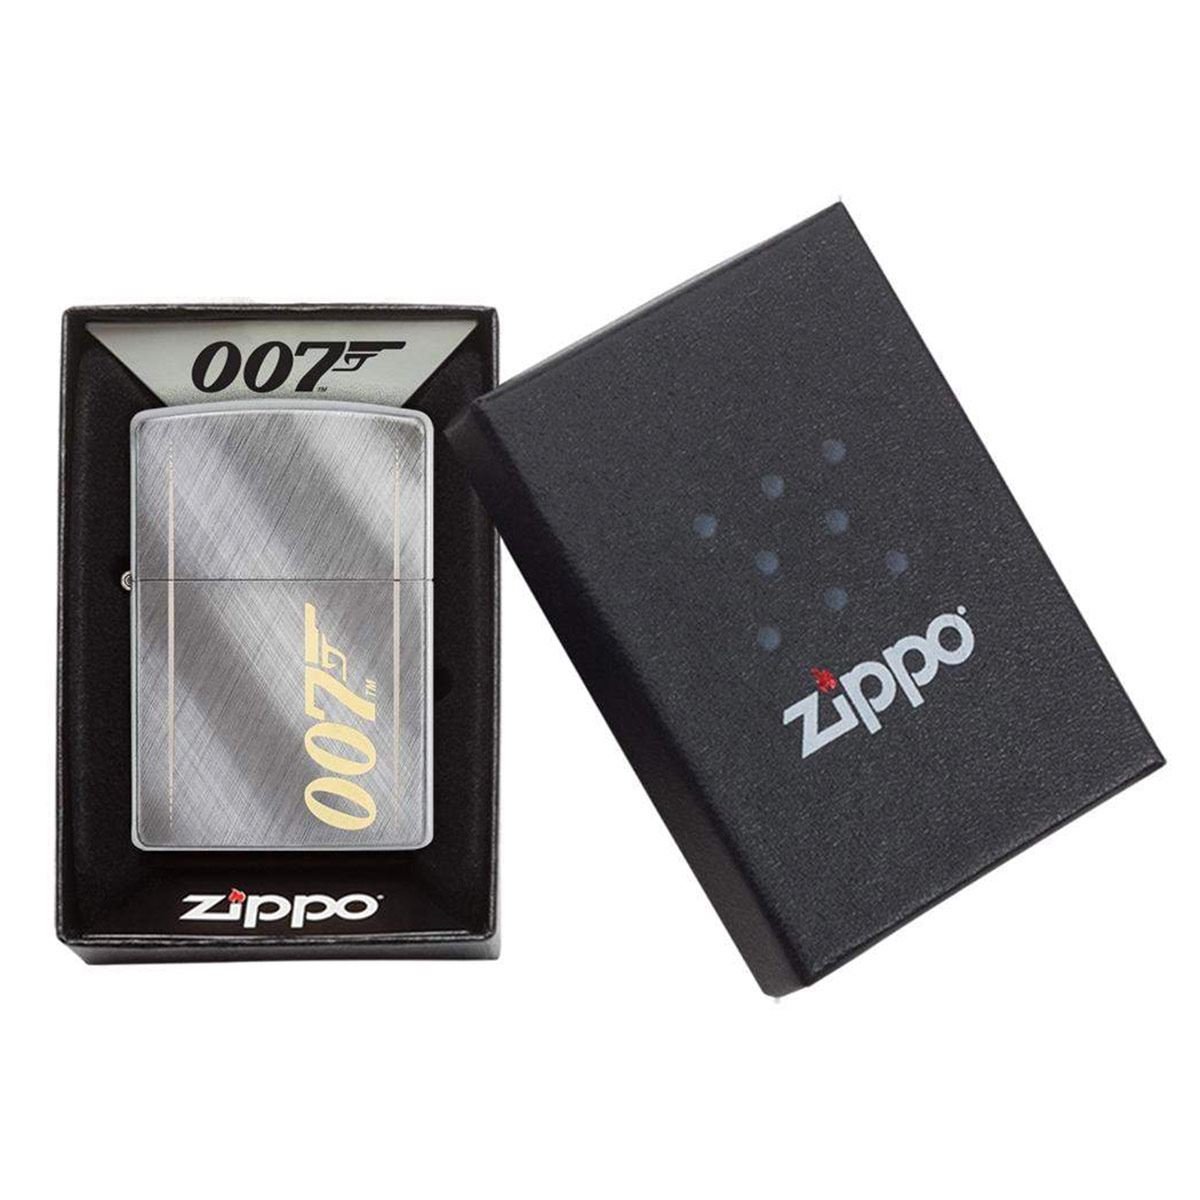 Encendedor Zippo 007 con lineas